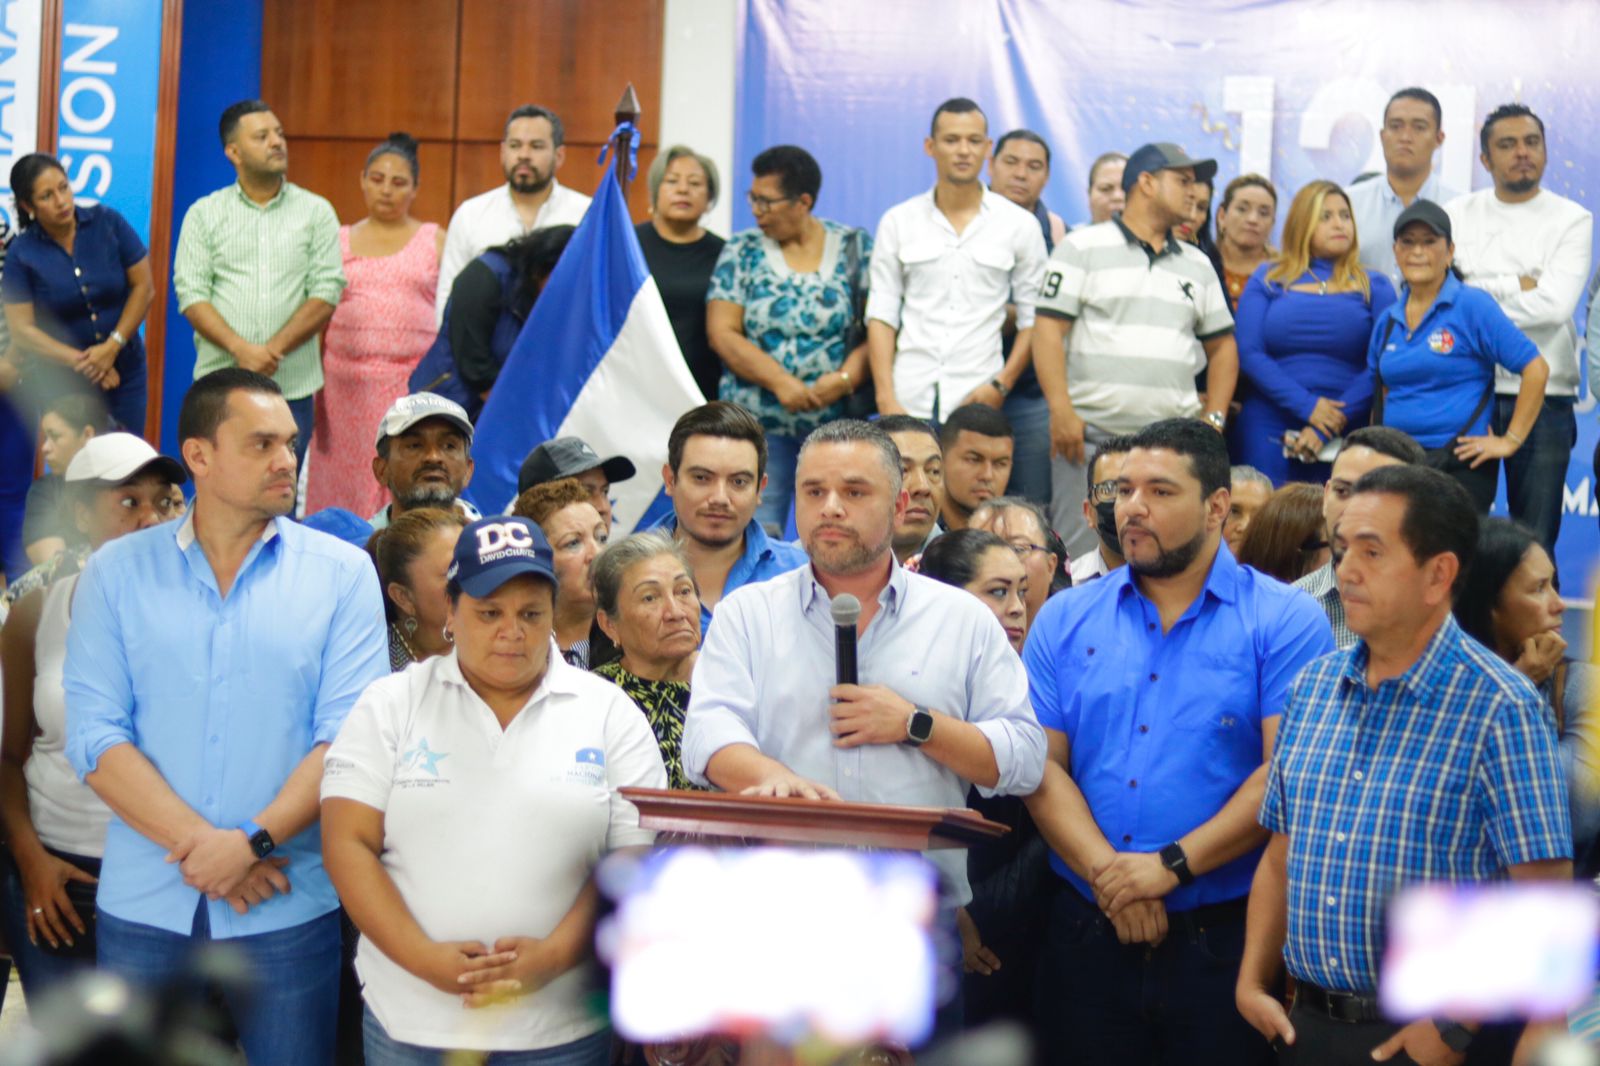 Libre inicia cacería política contra el presidente del Partido Nacional,David Chávez, al estilo de Nicaragua y Venezuela